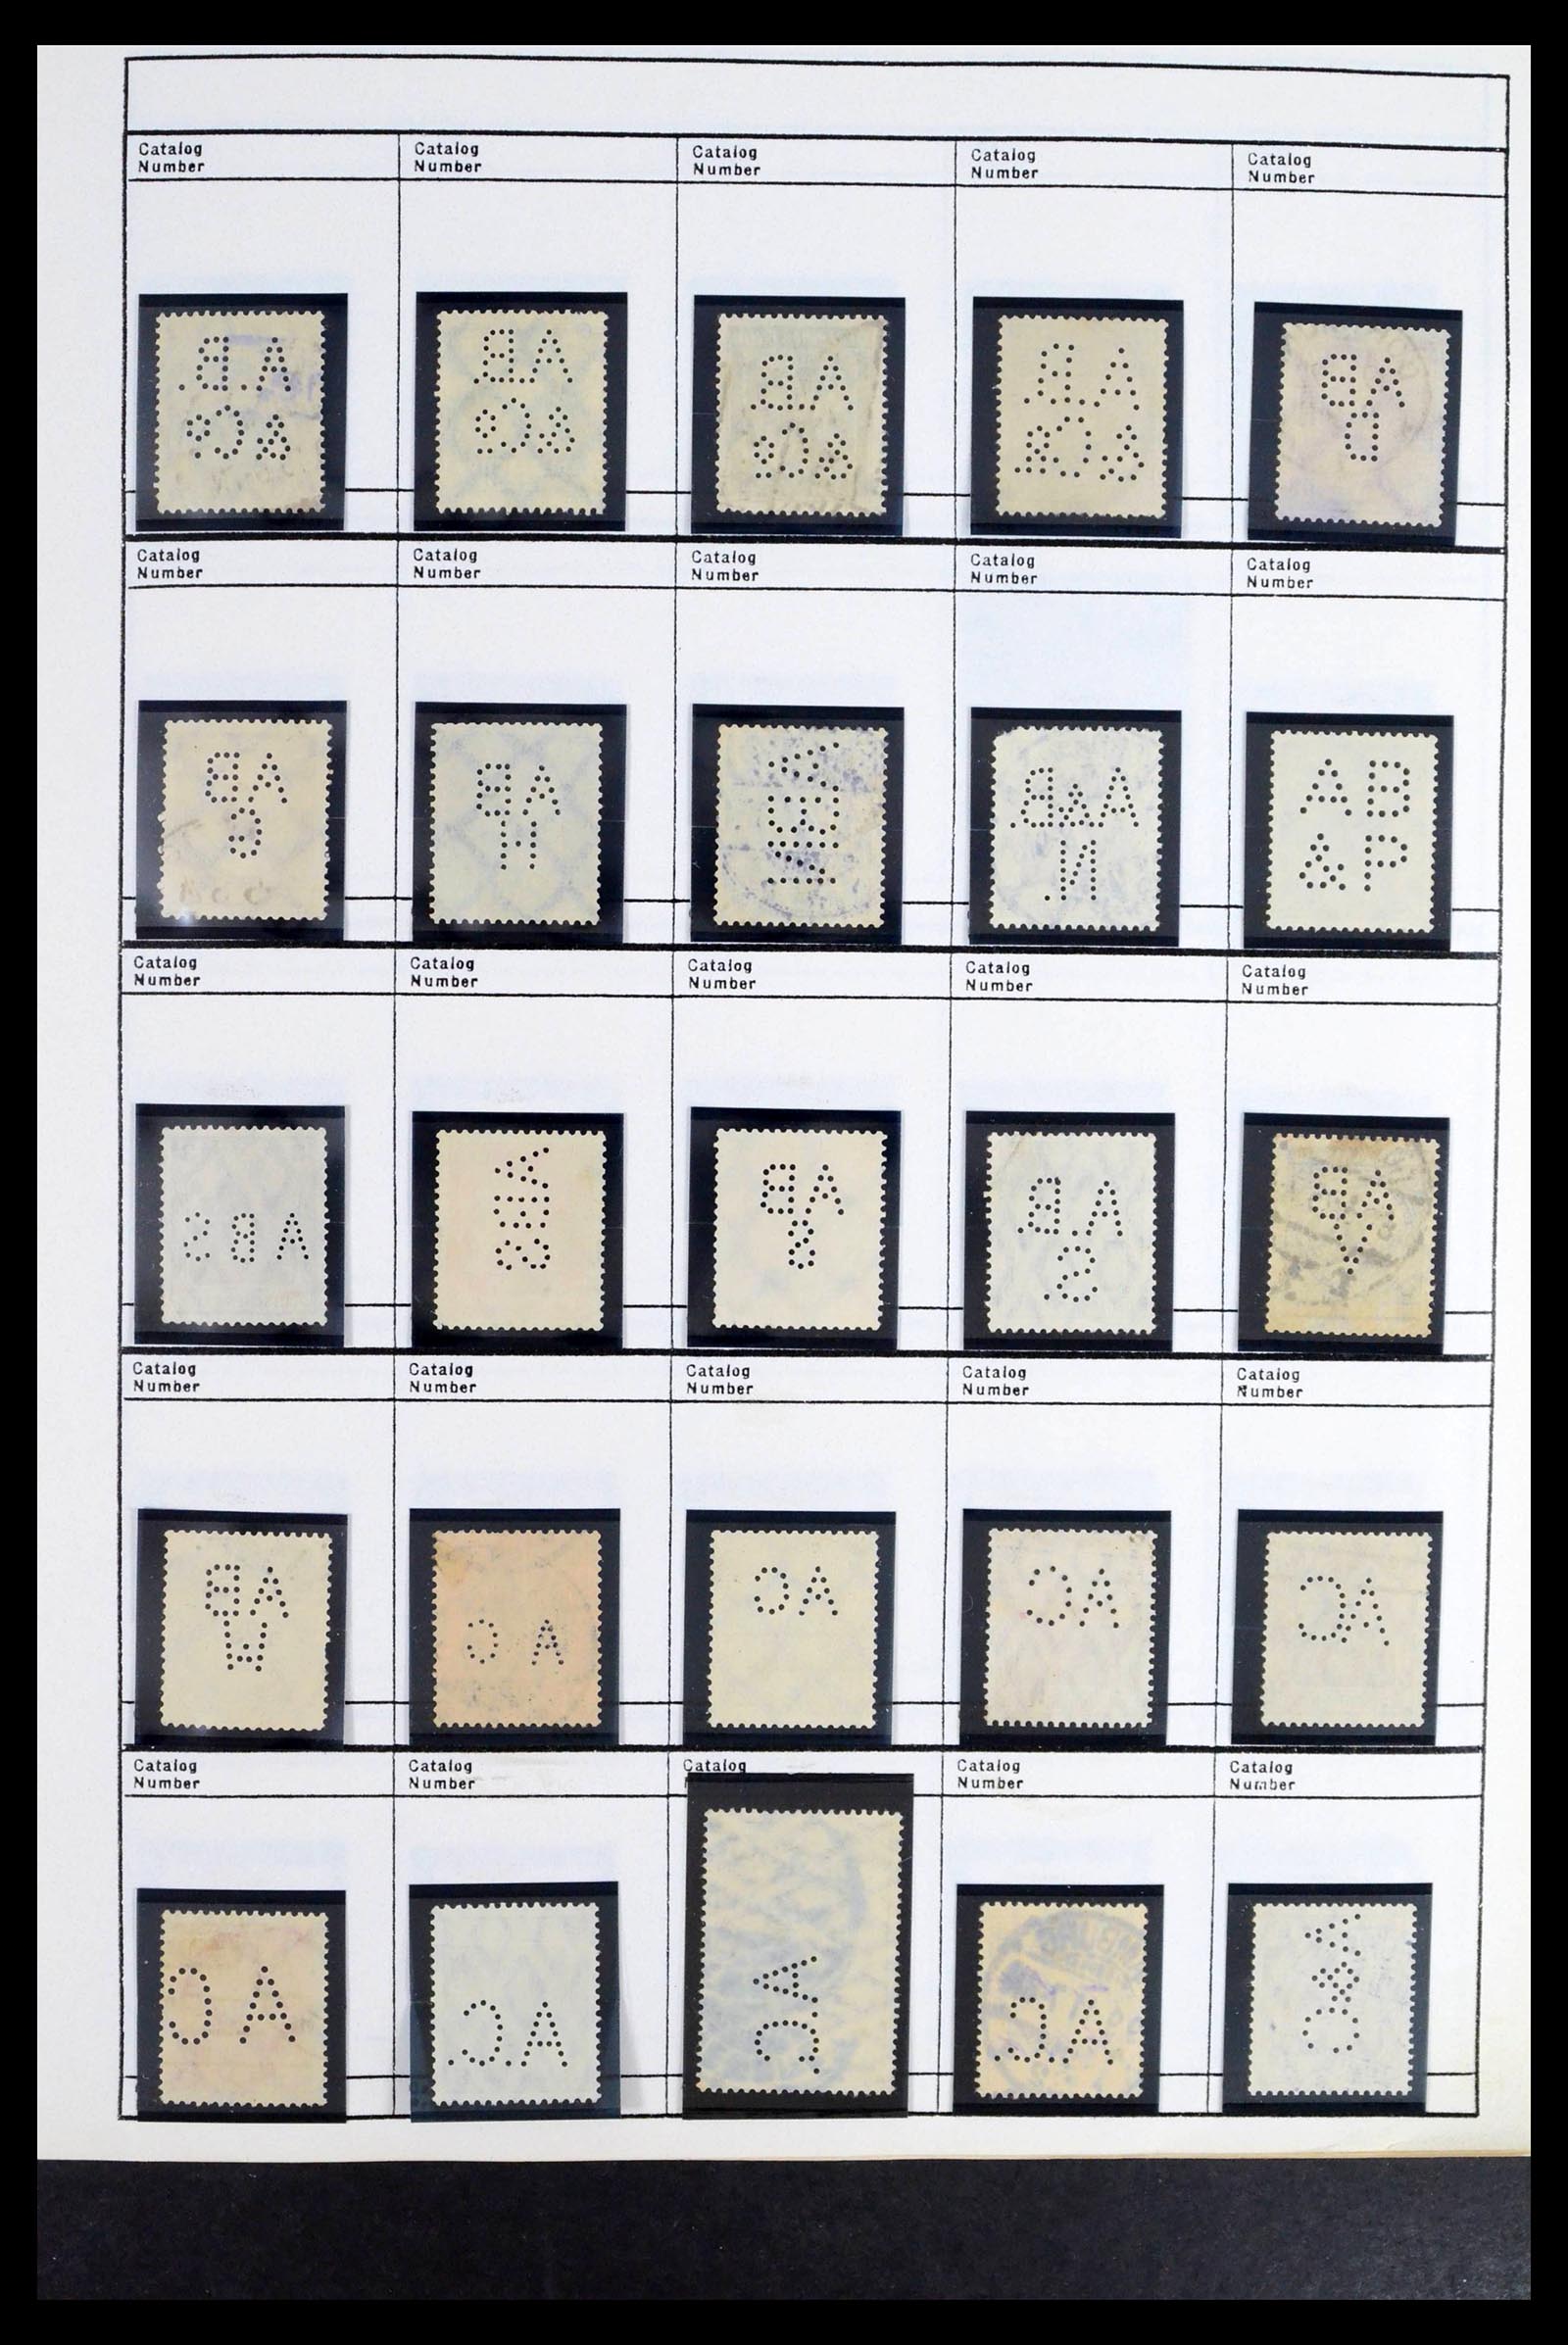 39480 0009 - Stamp collection 39480 German Reich perfins 1880-1955.